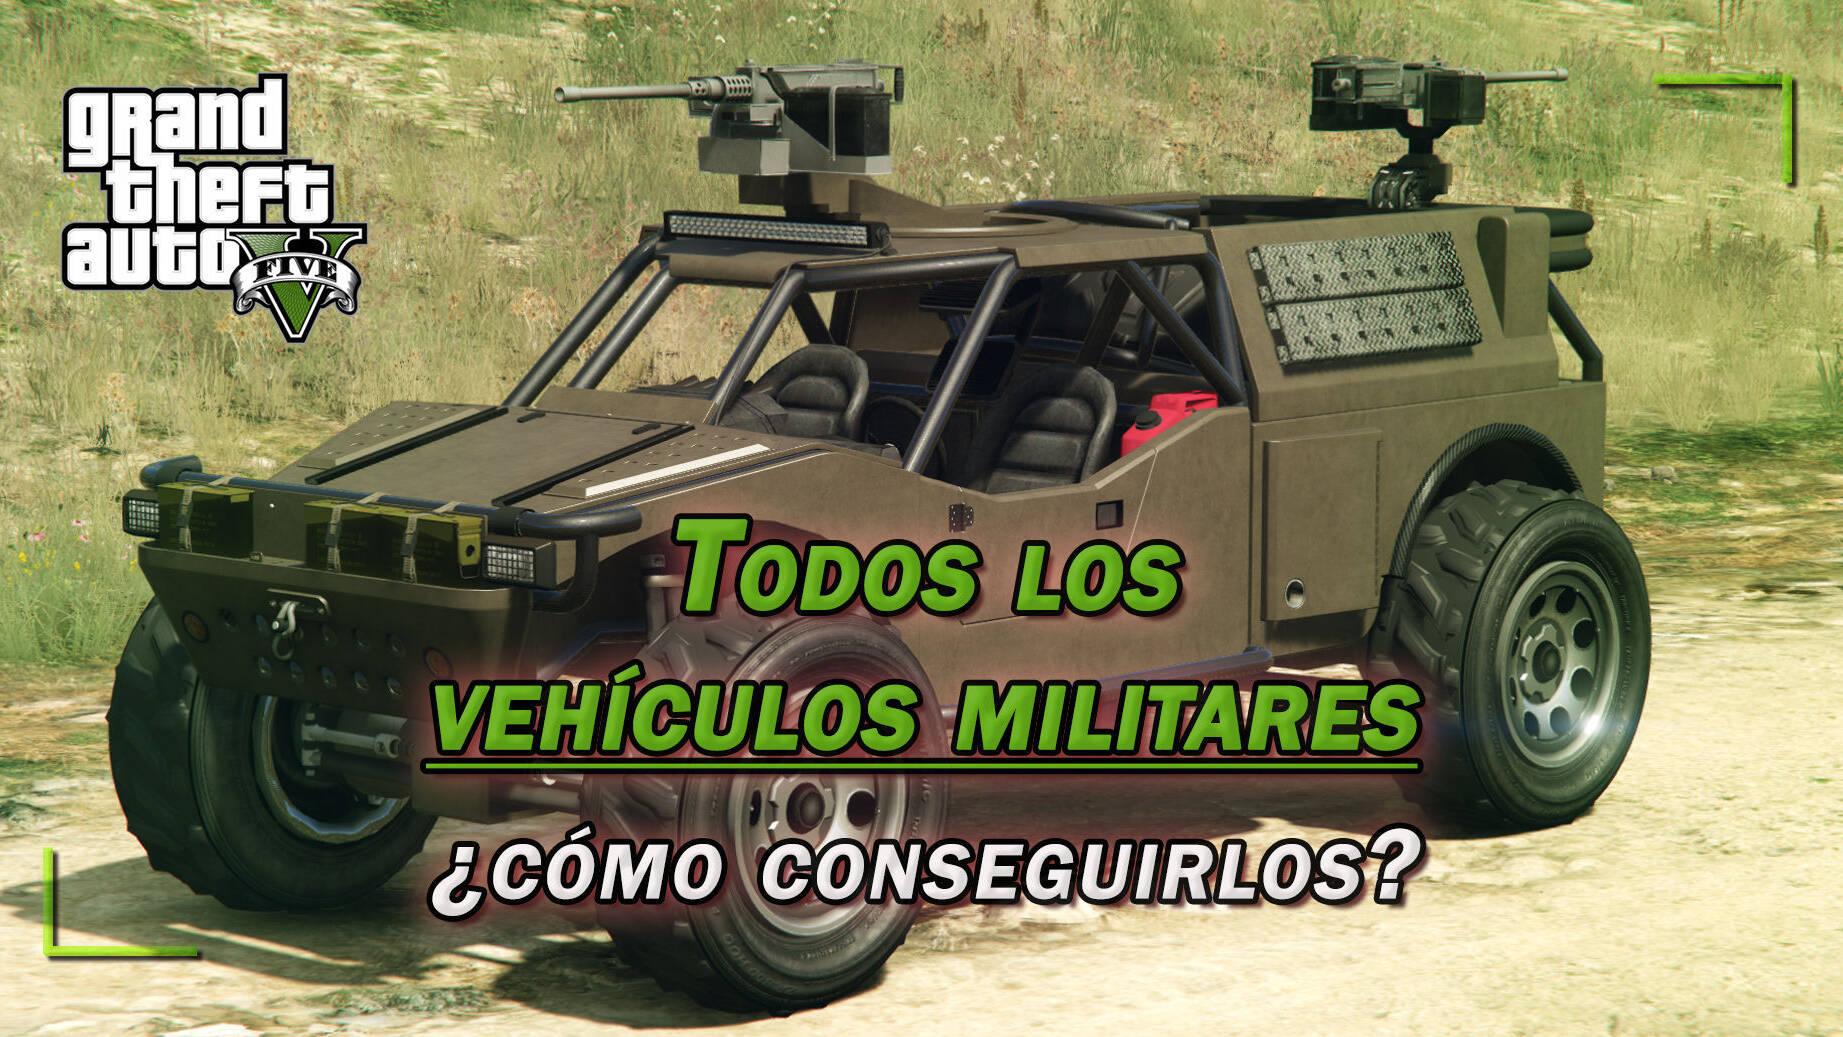 TODOS los vehículos militares de GTA conseguirlos?